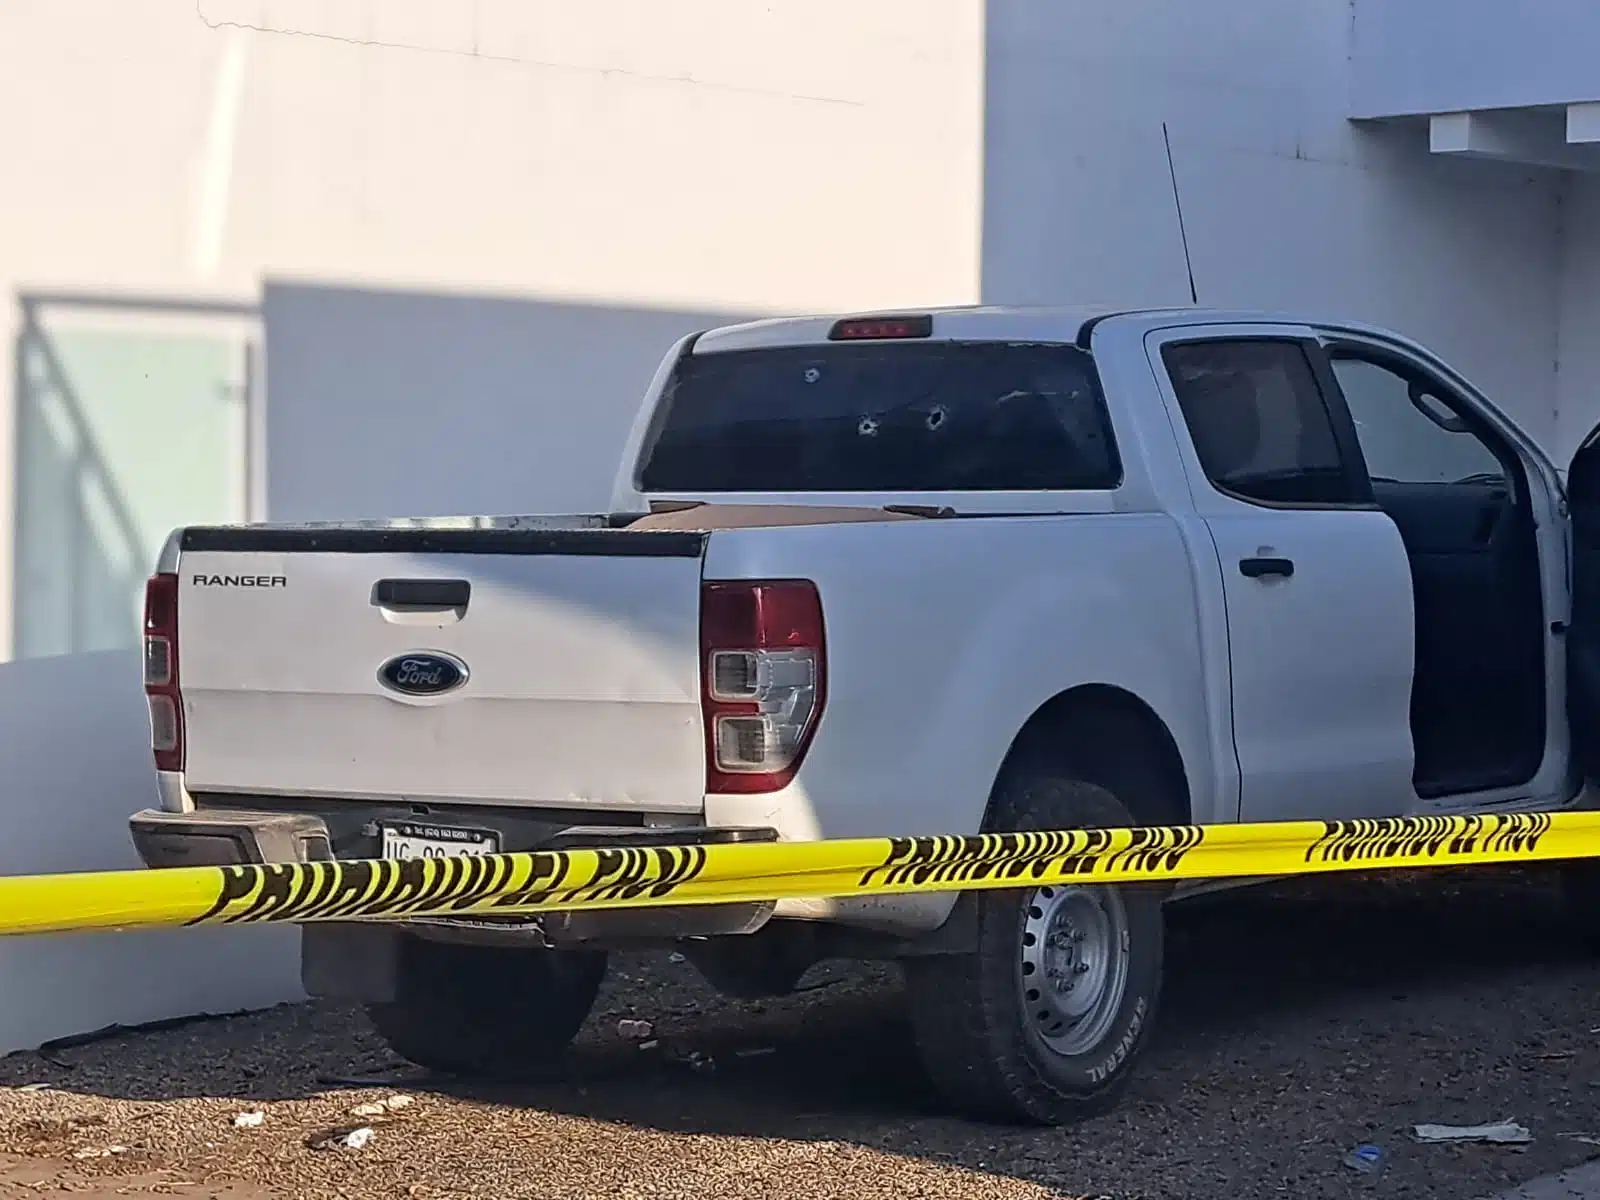 Camioneta baleada en fraccionamiento Valle Alto de Culiacán